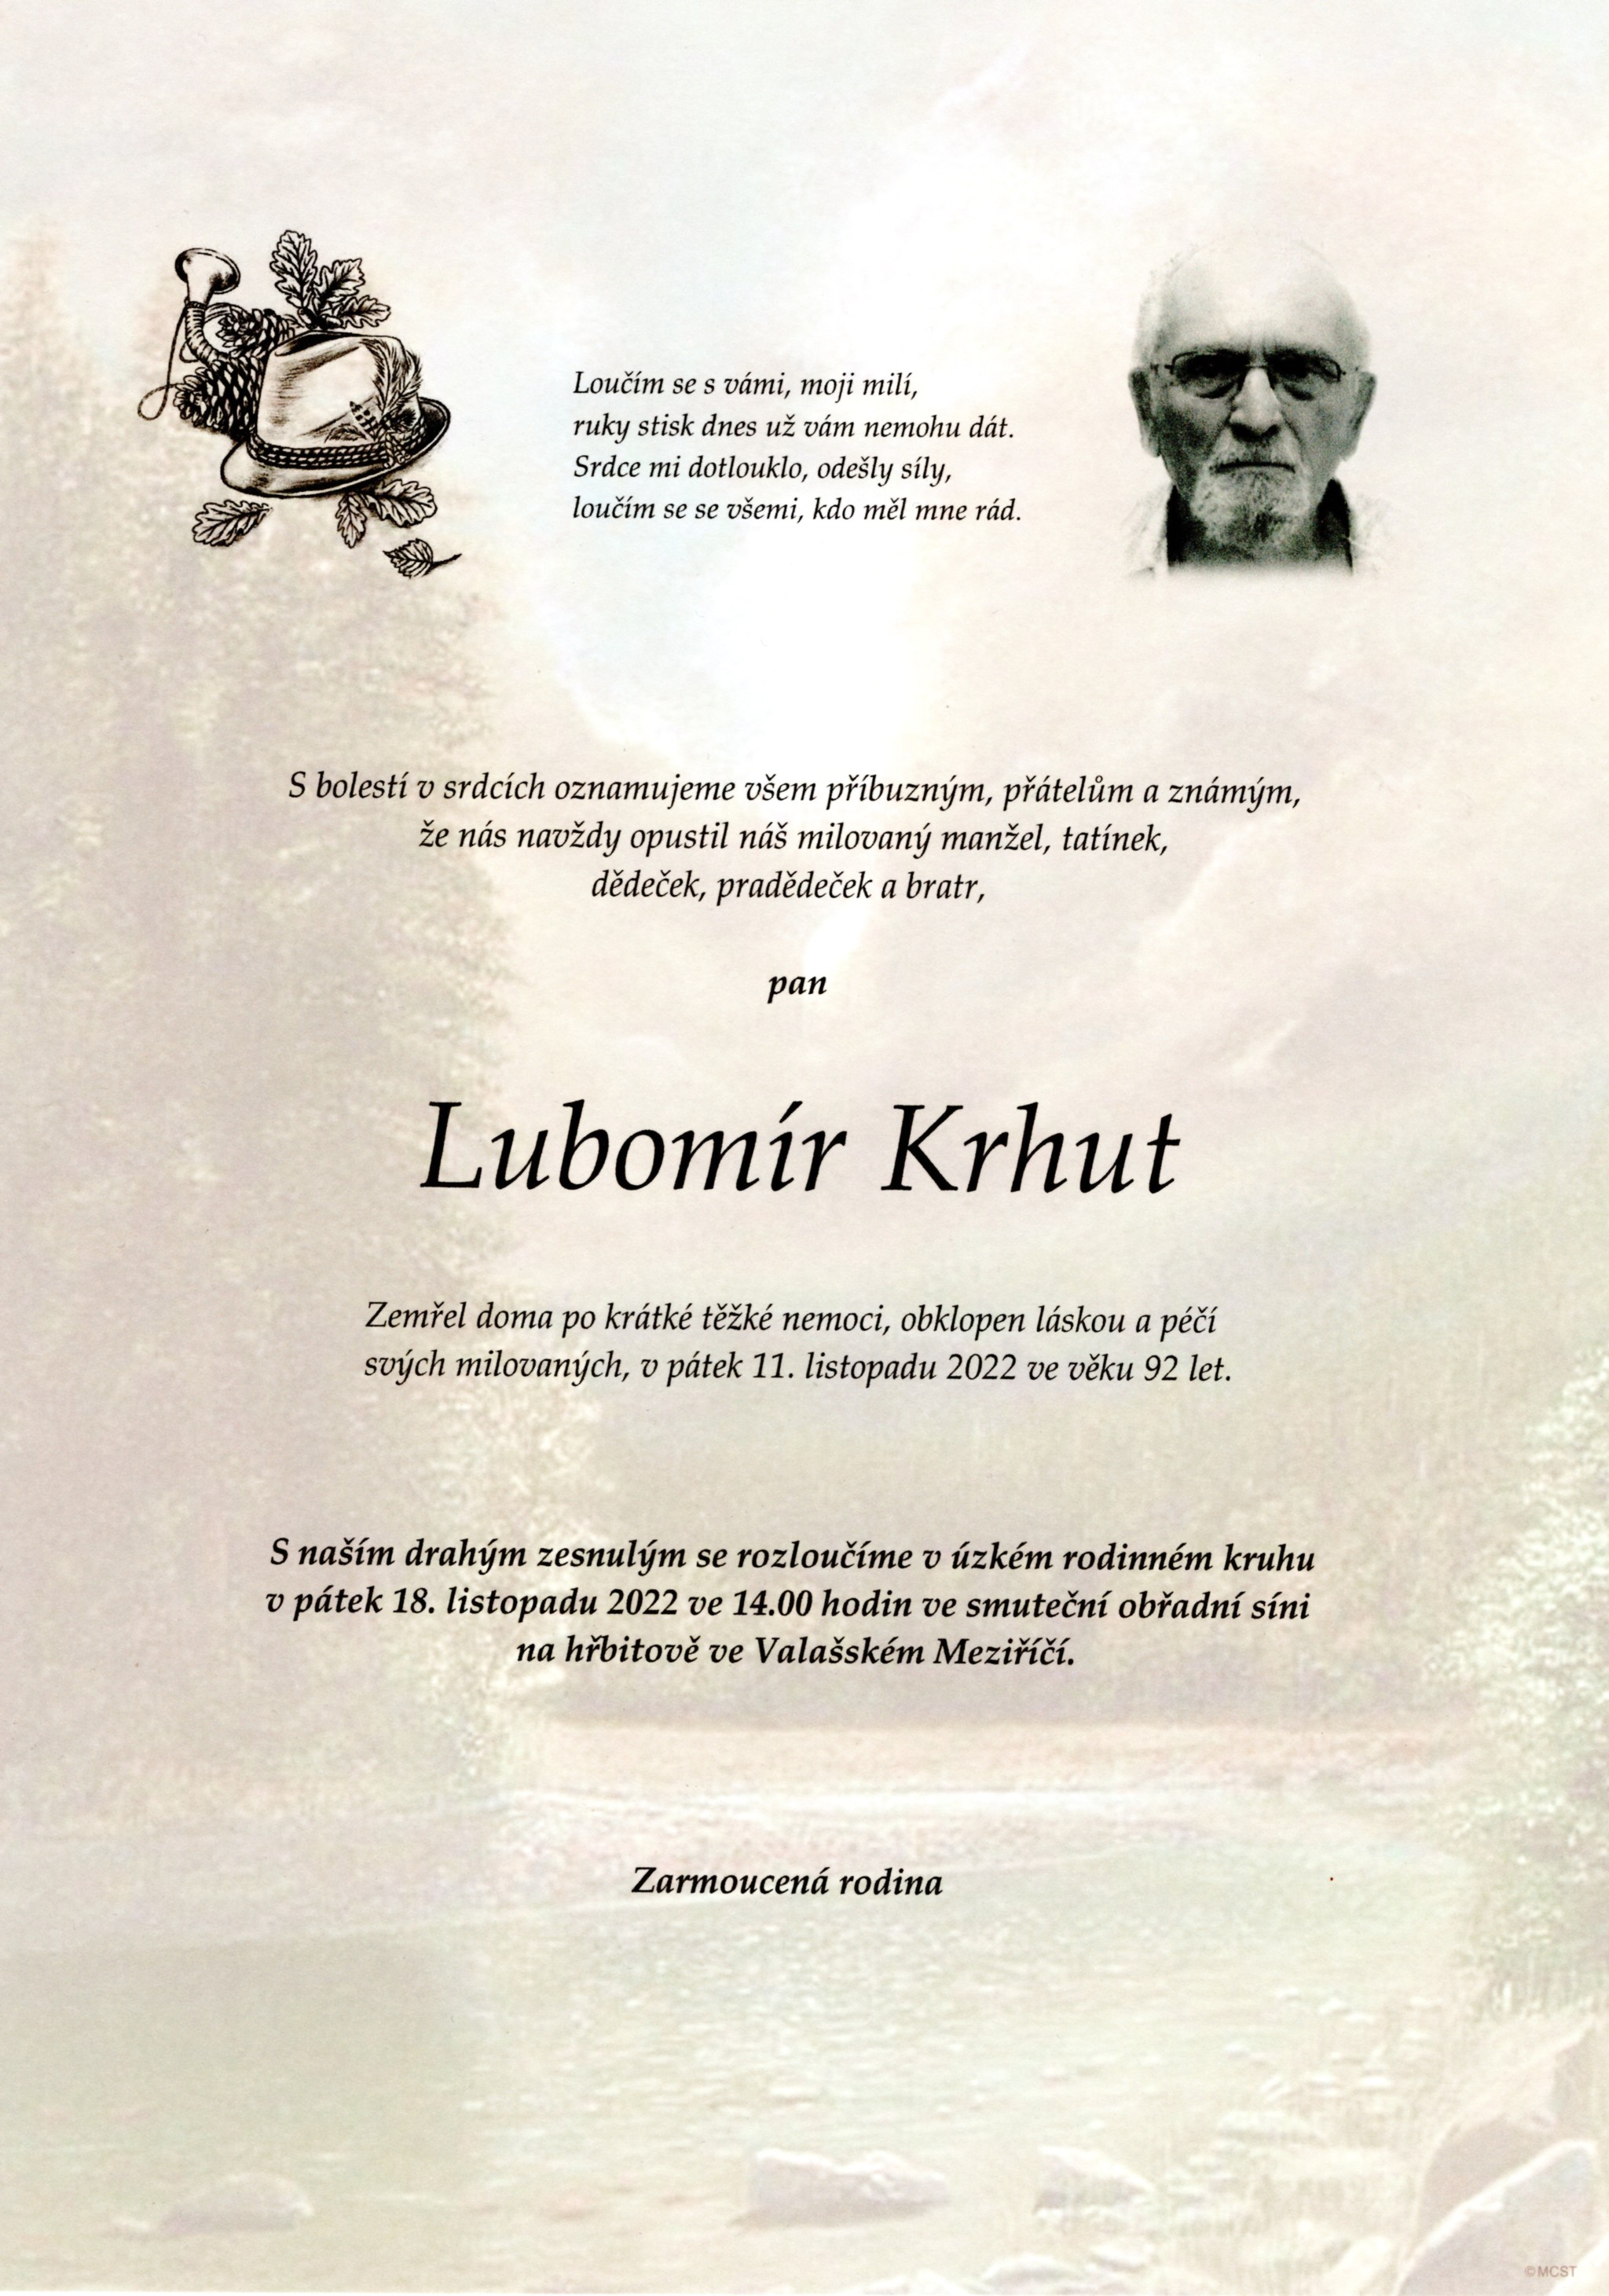 Lubomír Krhut